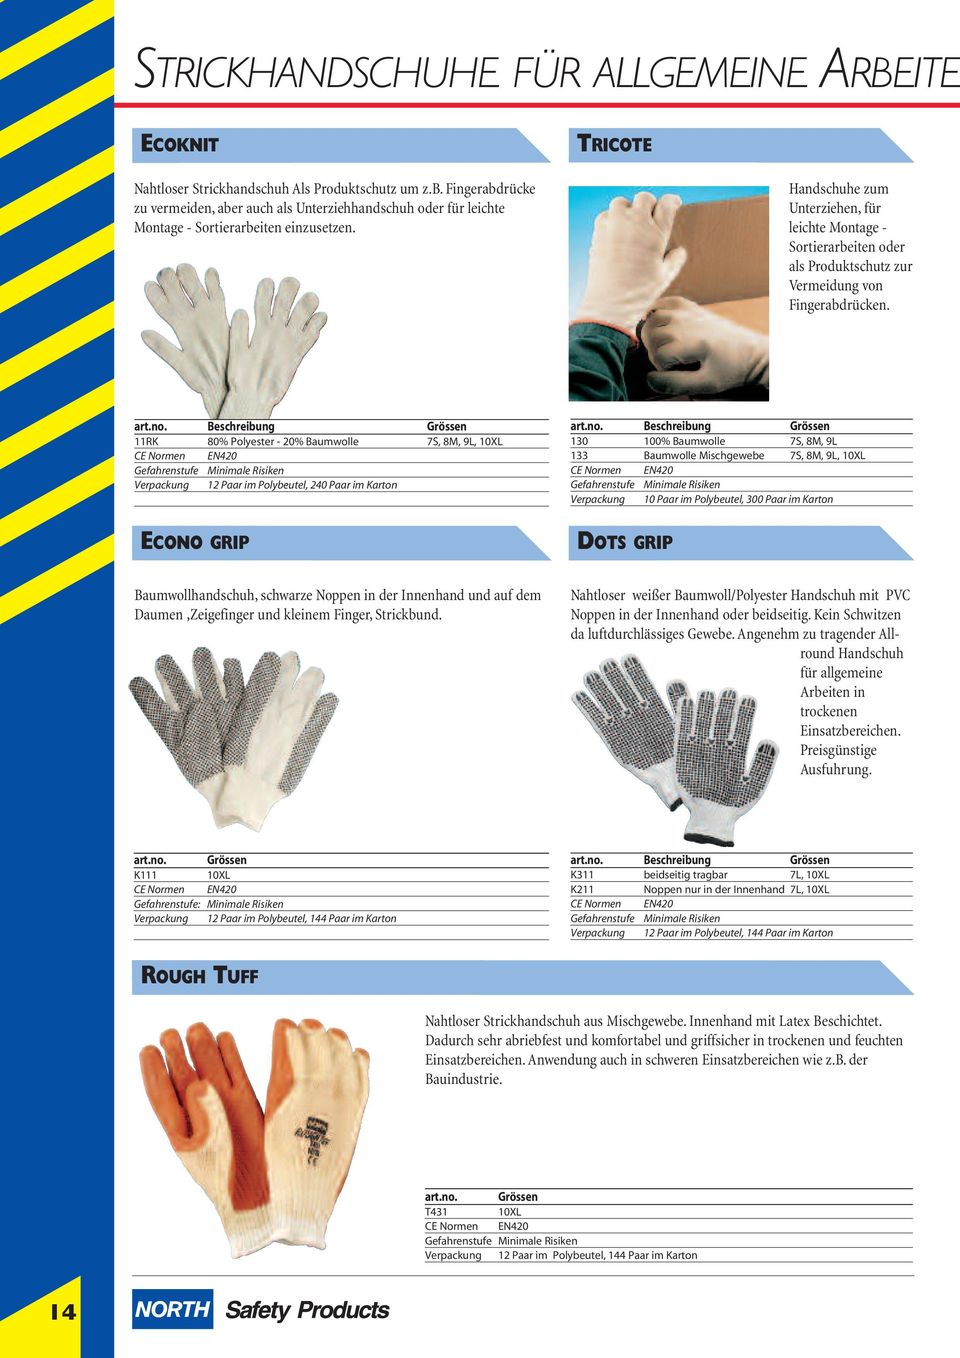 Handschuhe zum Unterziehen, für leichte Montage - Sortierarbeiten oder als Produktschutz zur Vermeidung von Fingerabdrücken.